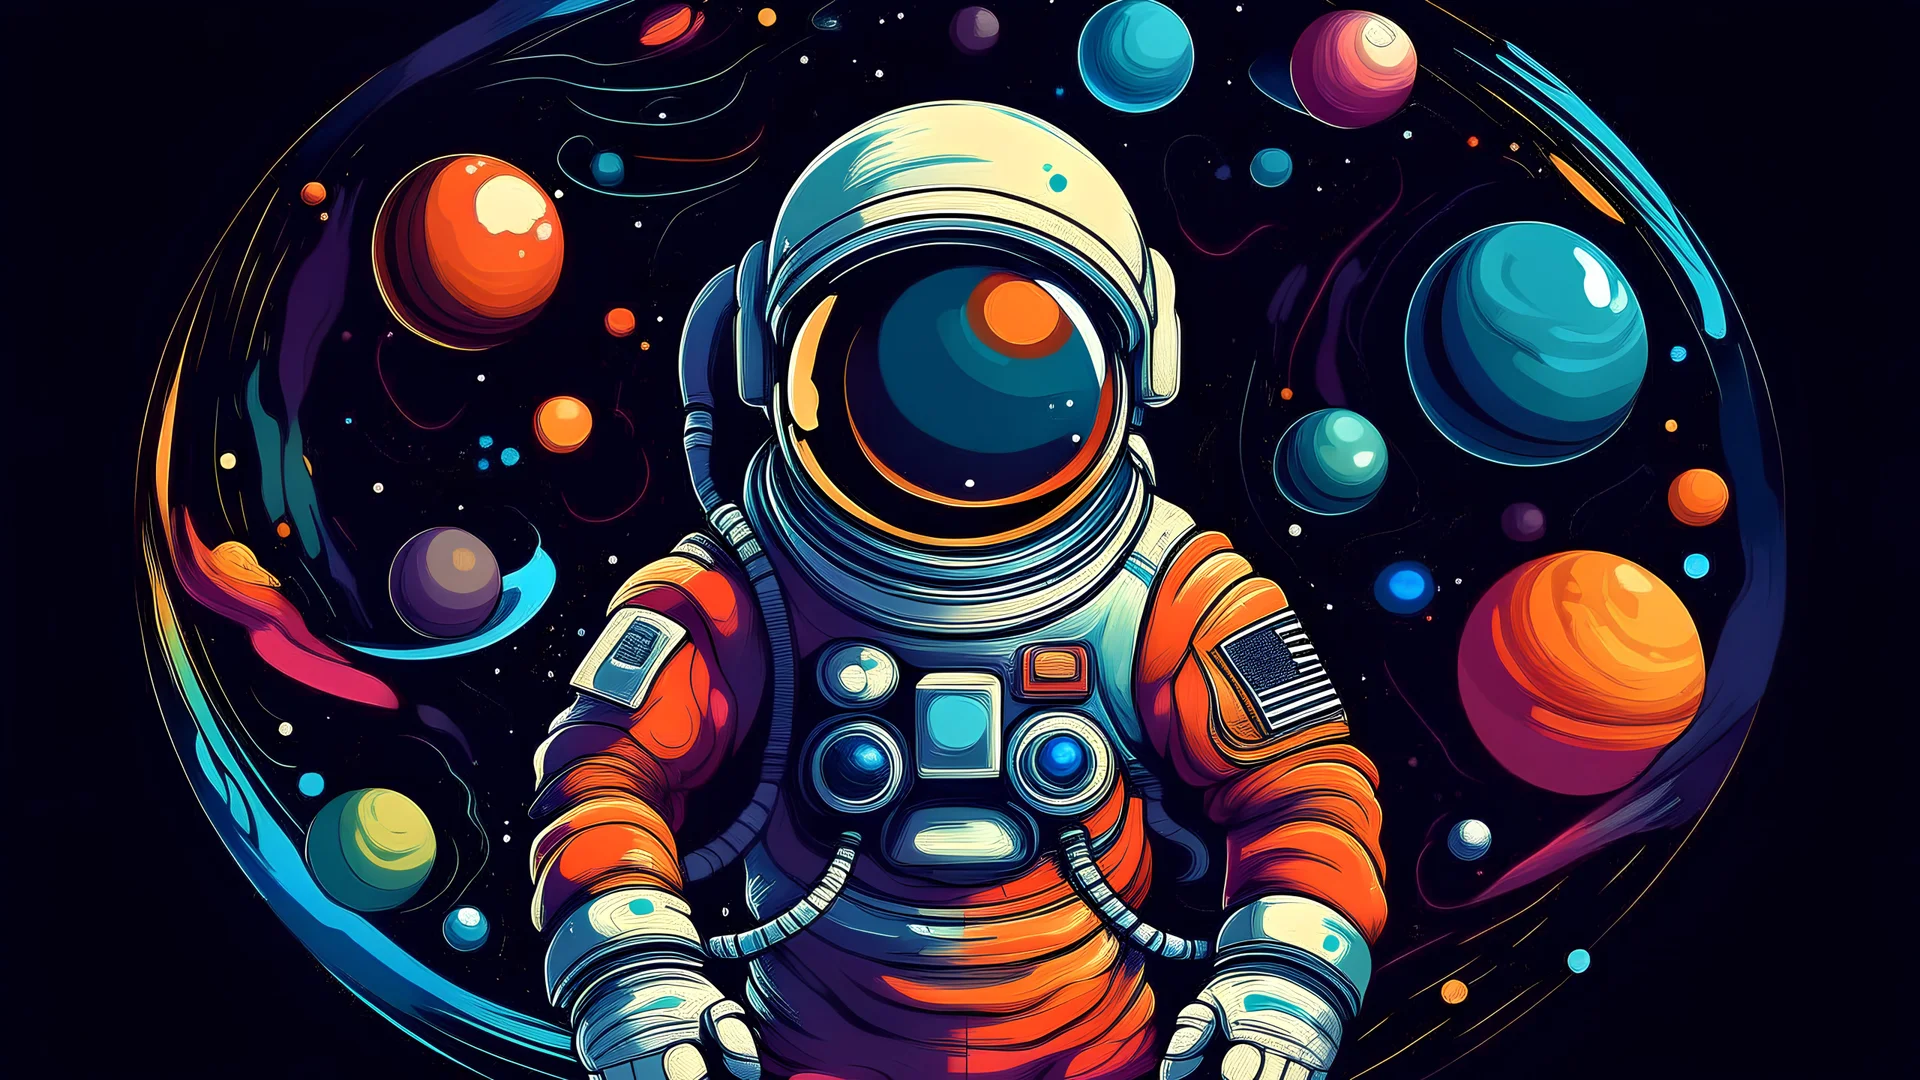 Illustre moi un astronaute dans l'espace. On doit le voir en plan centrale avec dans le fond l'espace, avec plusieurs planètes et étoiles. Le thème des couleurs doit rester dans les codes couleurs de l'espace.